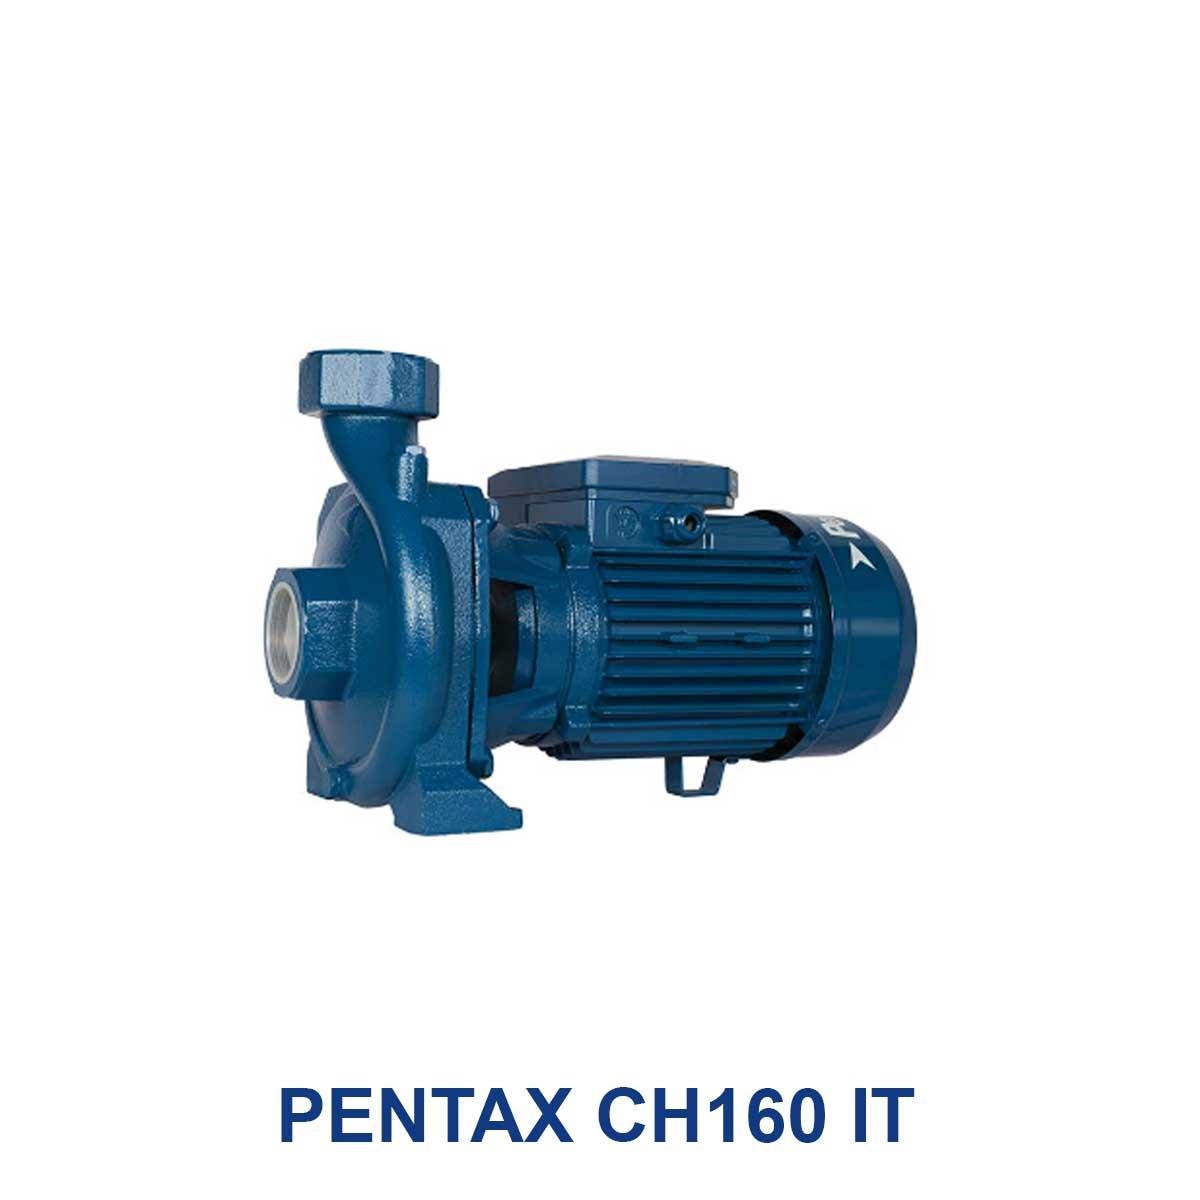 PENTAX-CH160-IT